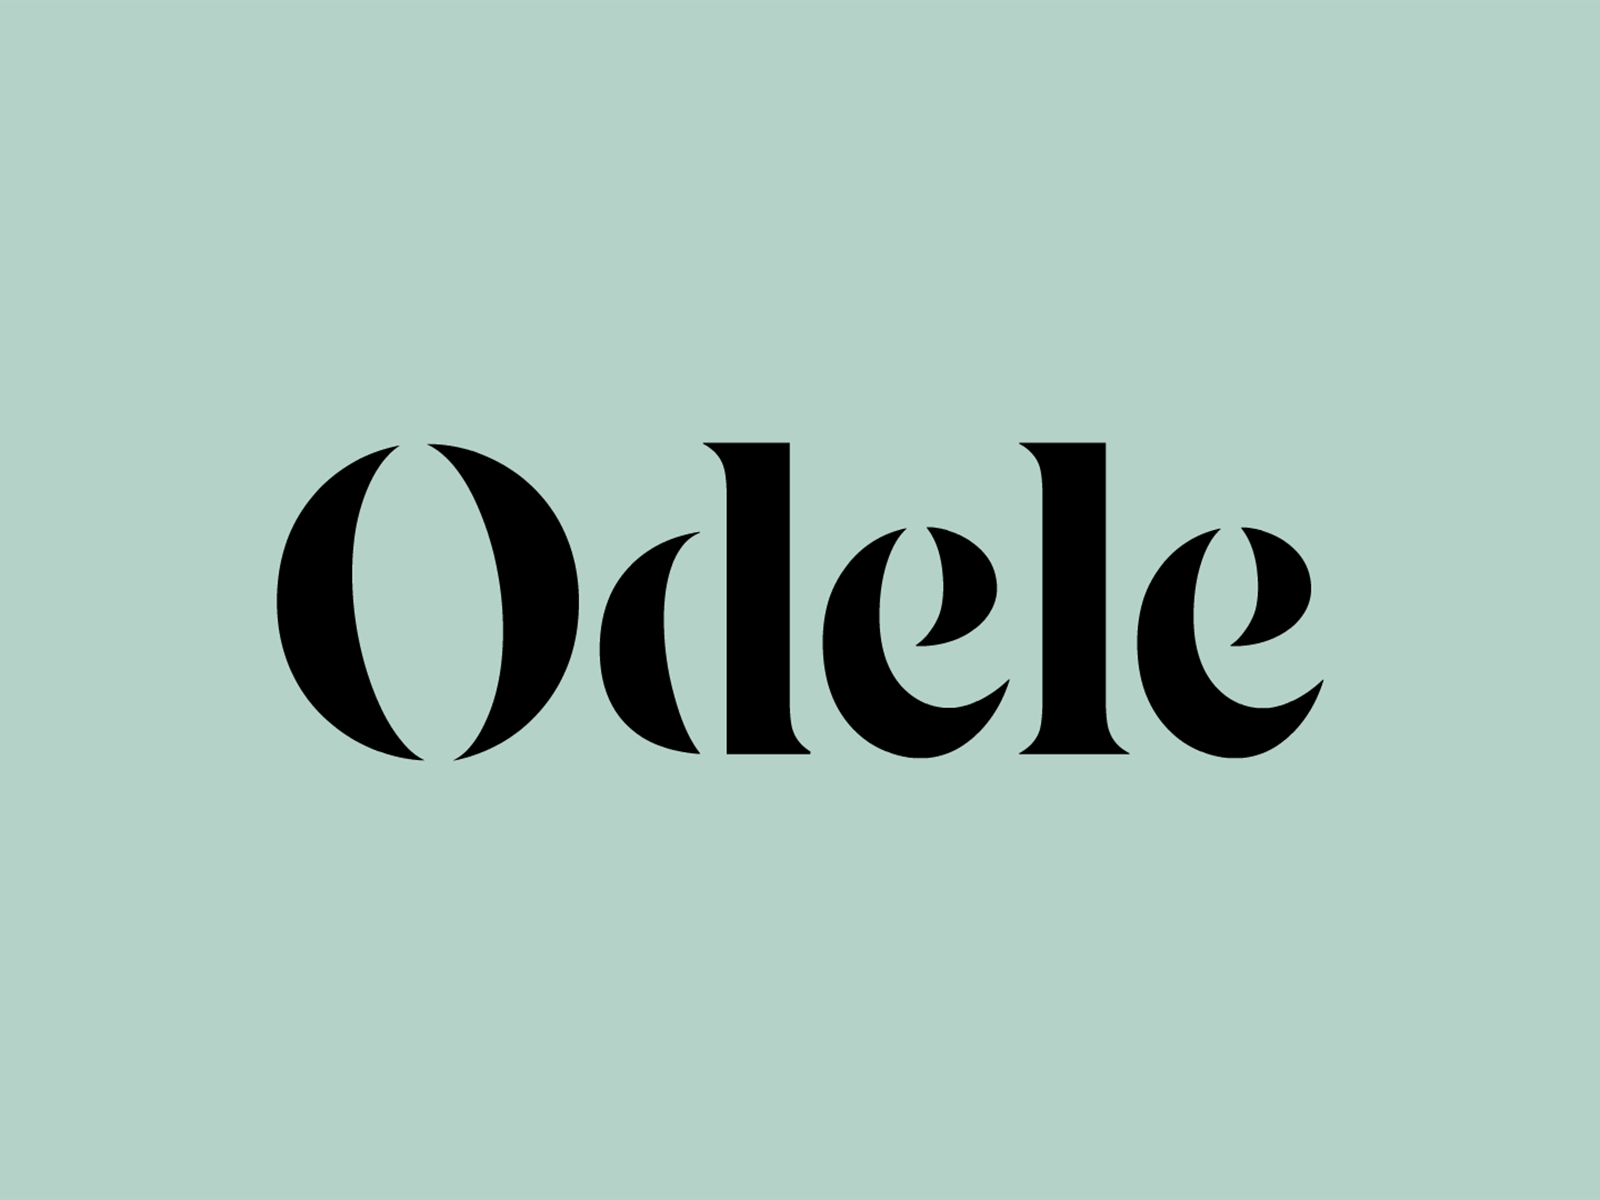 Odele Logotype